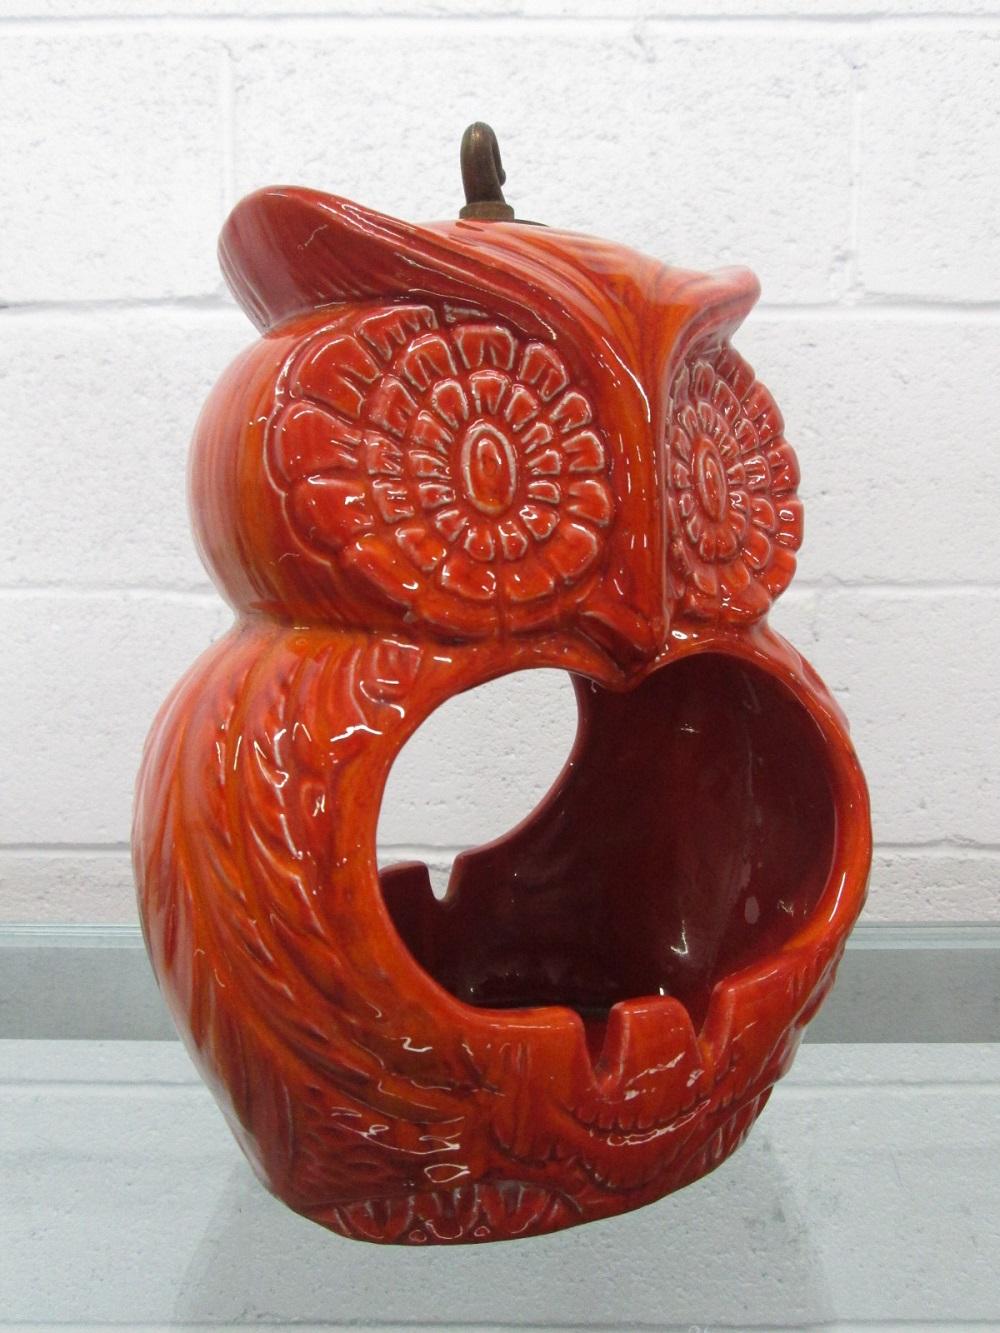 Cendrier hibou suspendu en céramique, de style moderne du milieu du siècle. Belle couleur orange vibrante de la céramique.
   